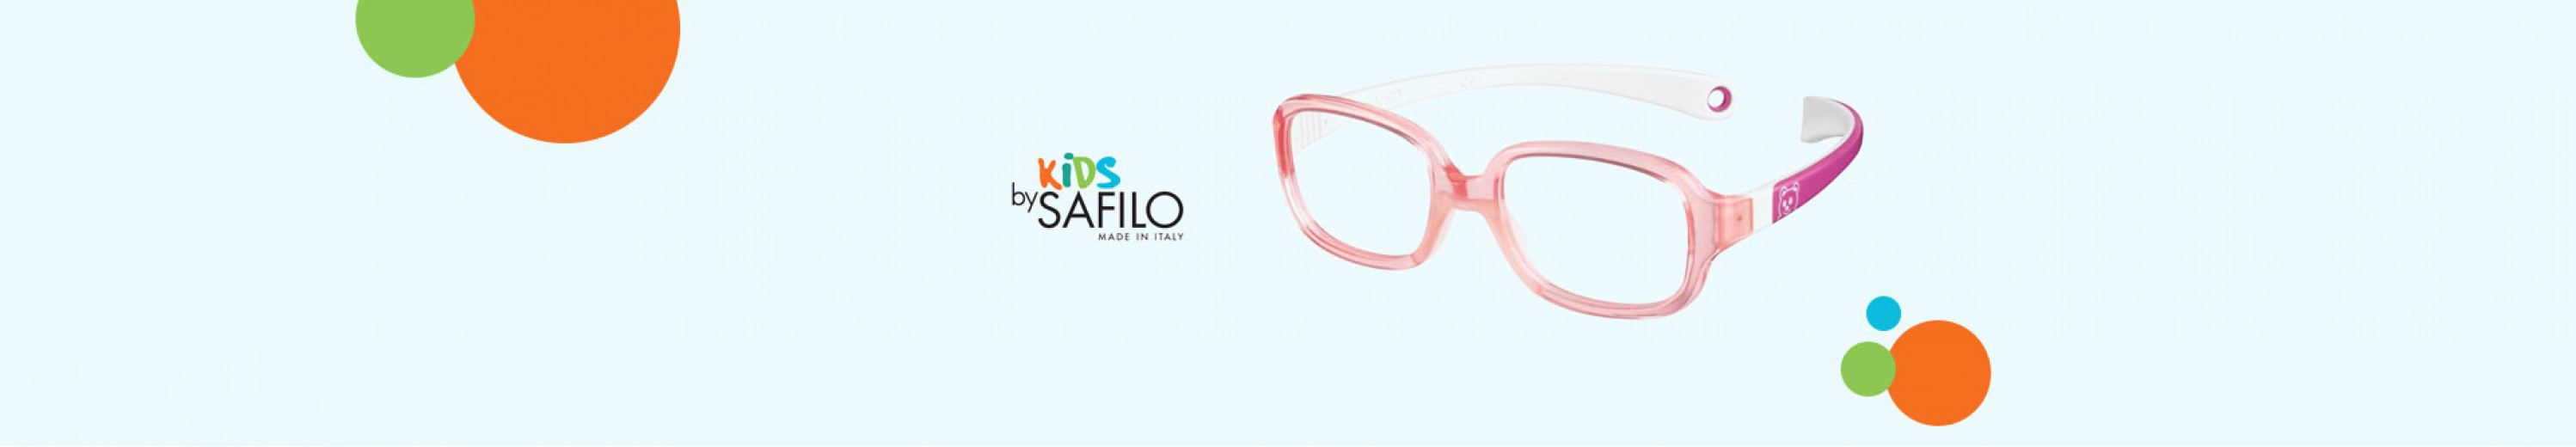 Safilo Eyeglasses for Kids